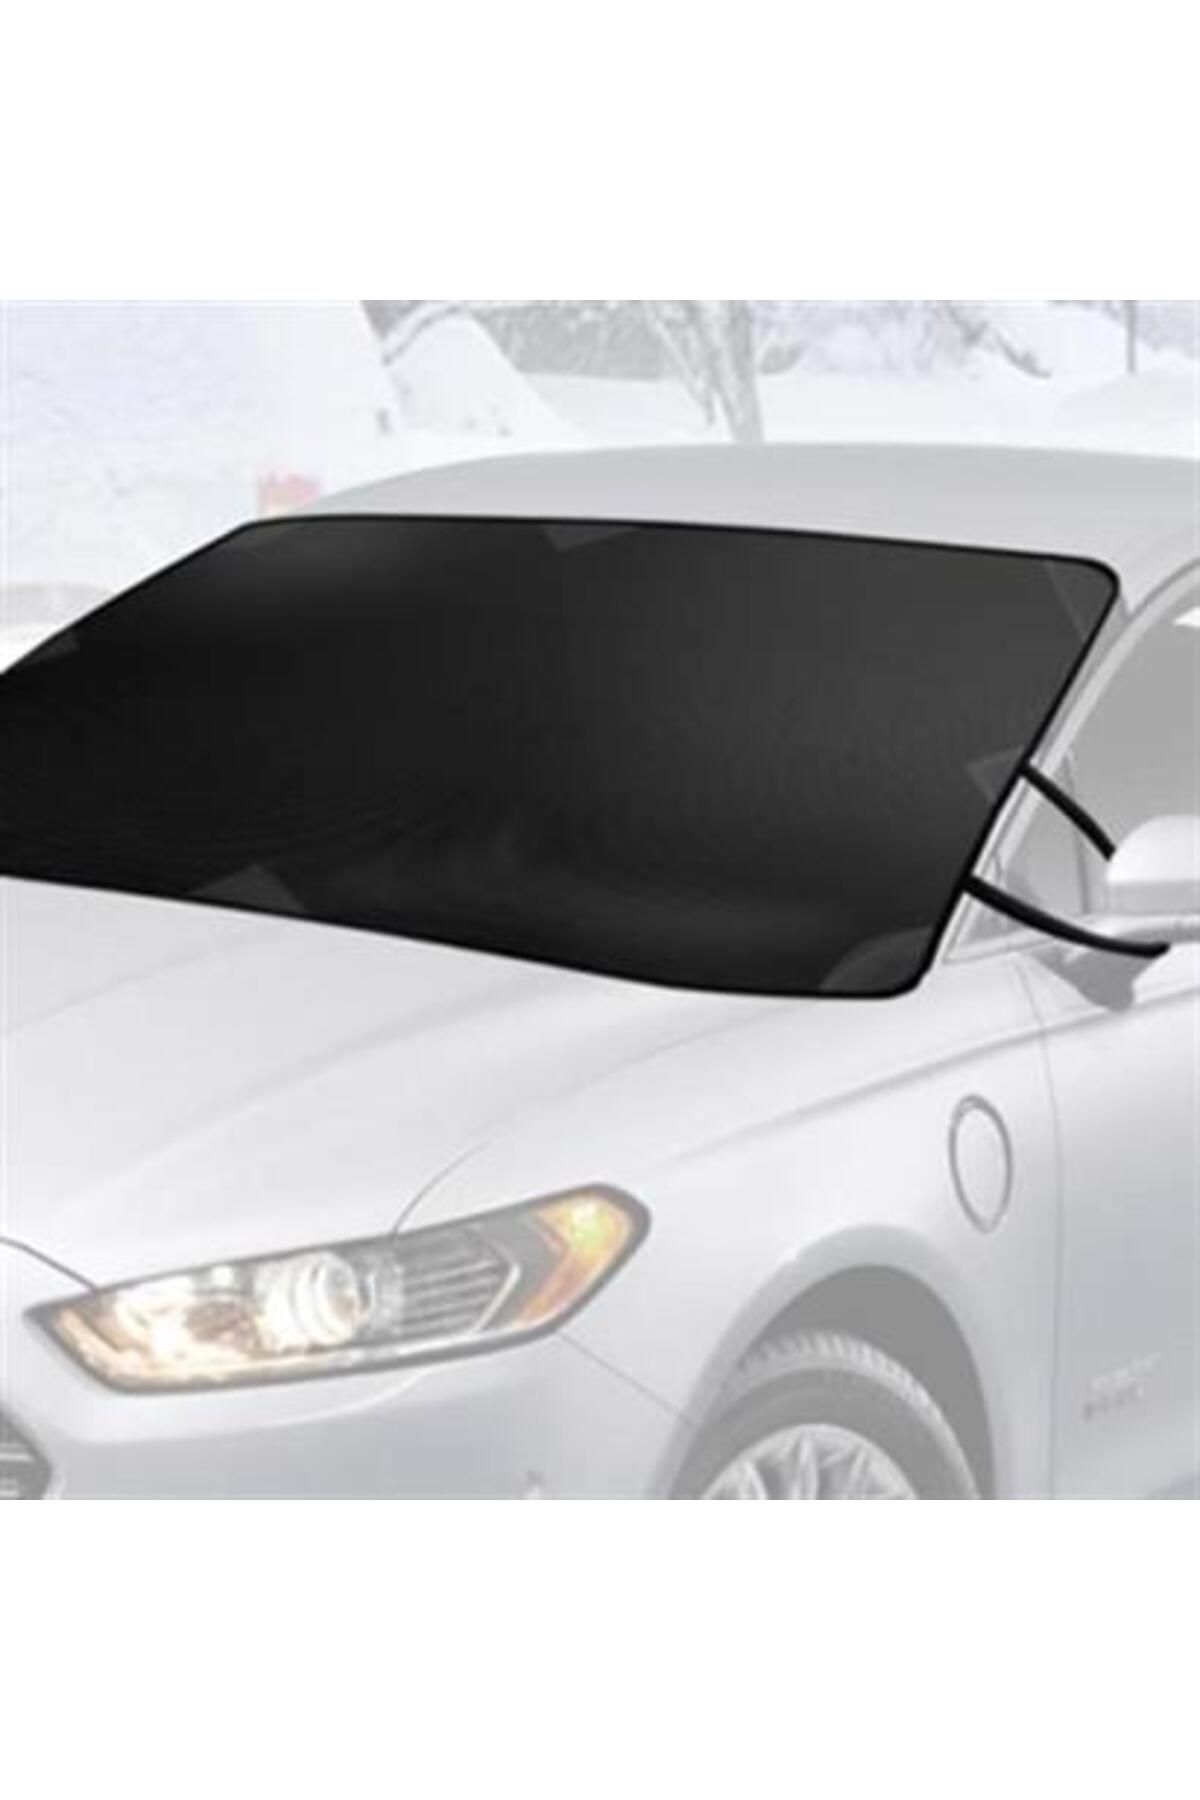 Tenda Buffer® Büyük Boy Araçlar İçin Ön Cam Brandası Suv Ve Doblo Araçlar İçin Kar Buz Güneş Brandası